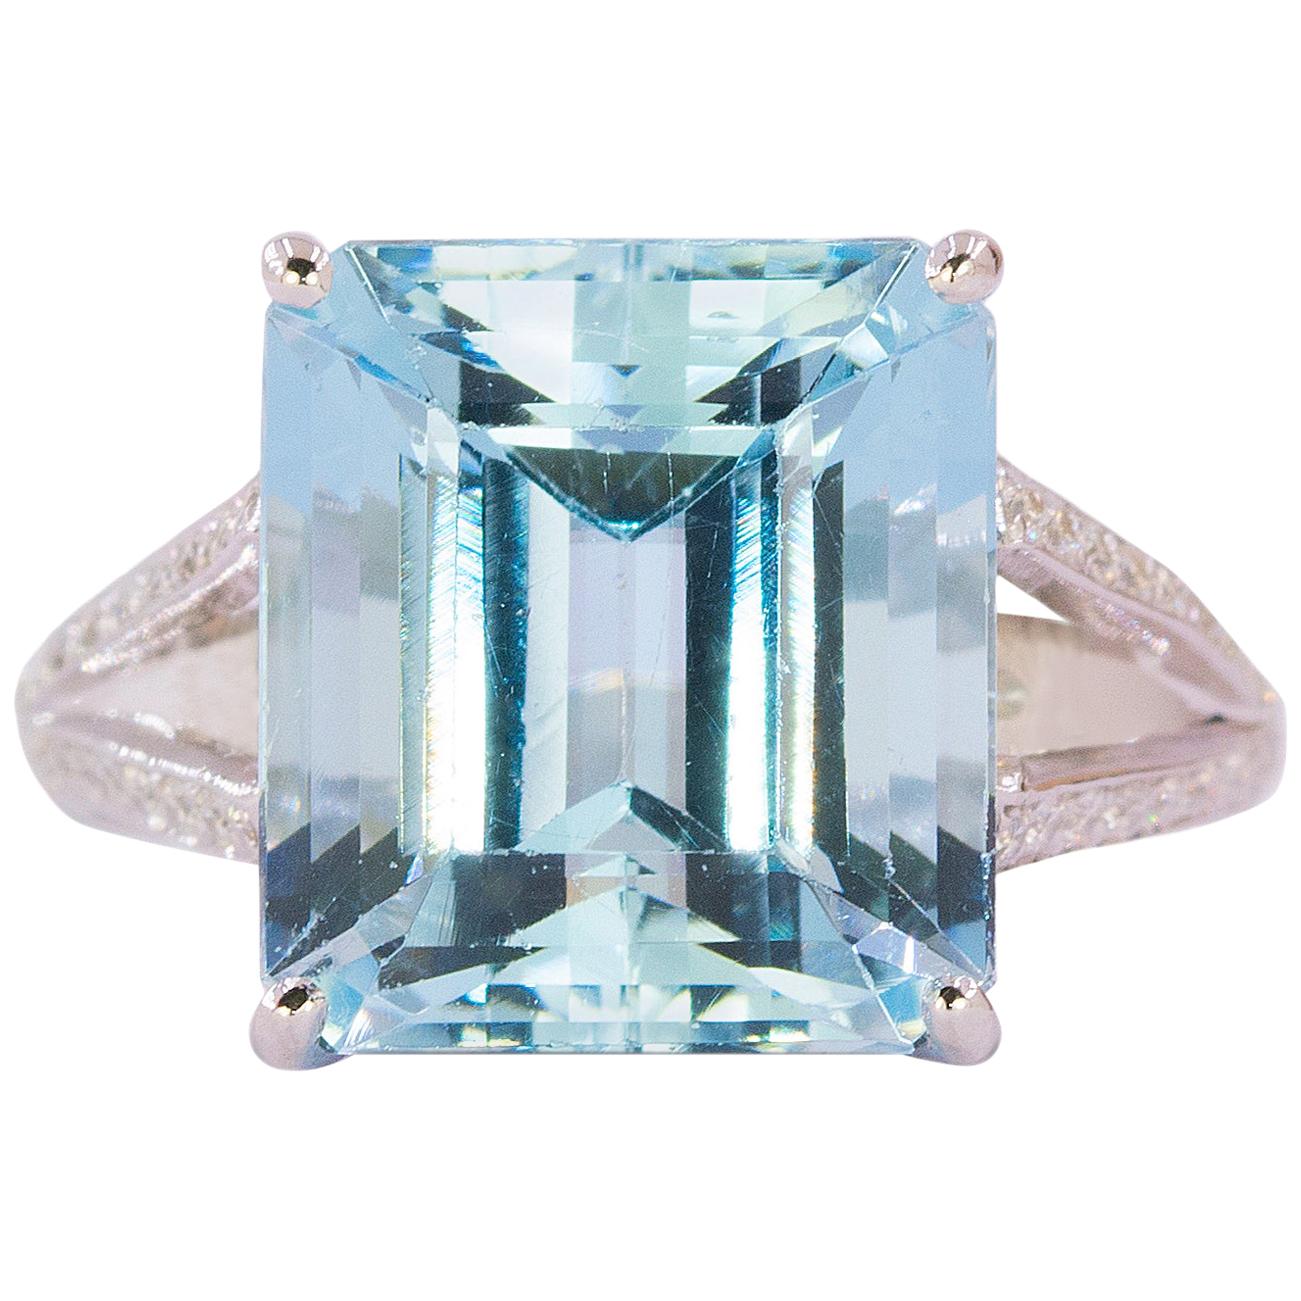 Platinum Ring with 8.73 Carat Emerald Cut Aquamarine